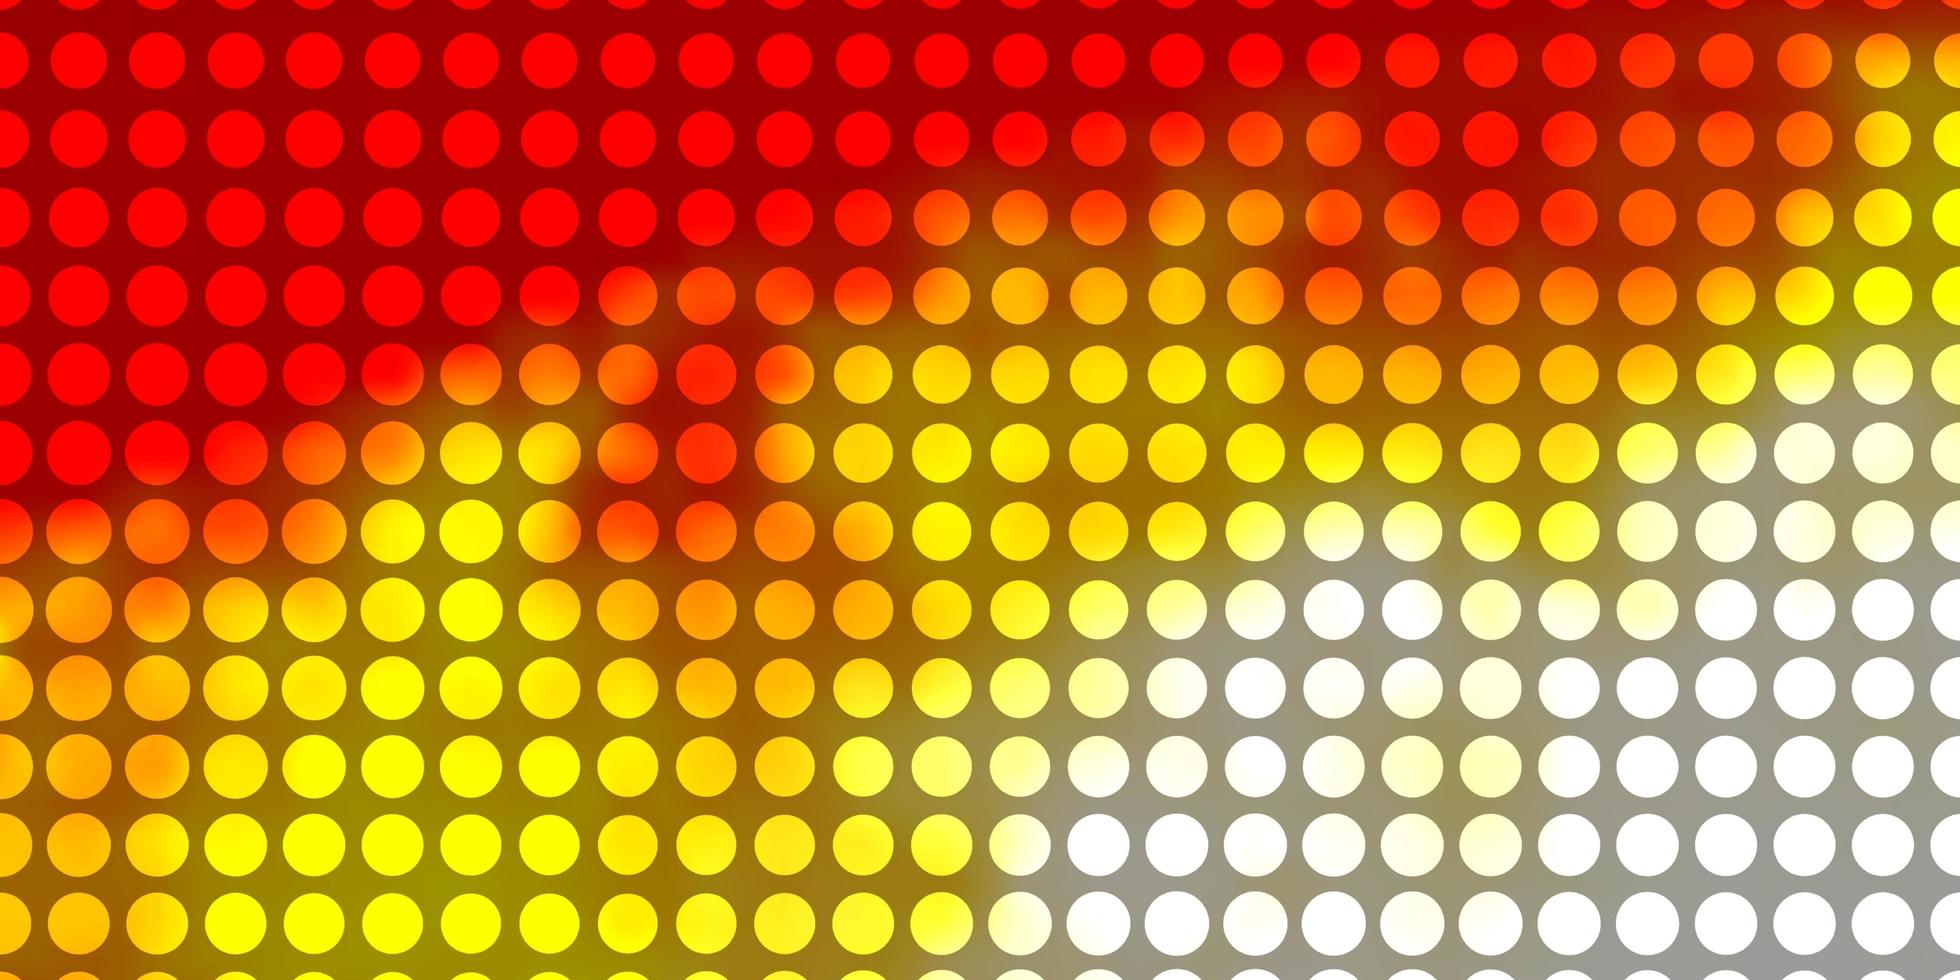 lichtoranje vectortextuur met cirkels. illustratie met set van glanzende kleurrijke abstracte bollen. patroon voor websites, bestemmingspagina's. vector